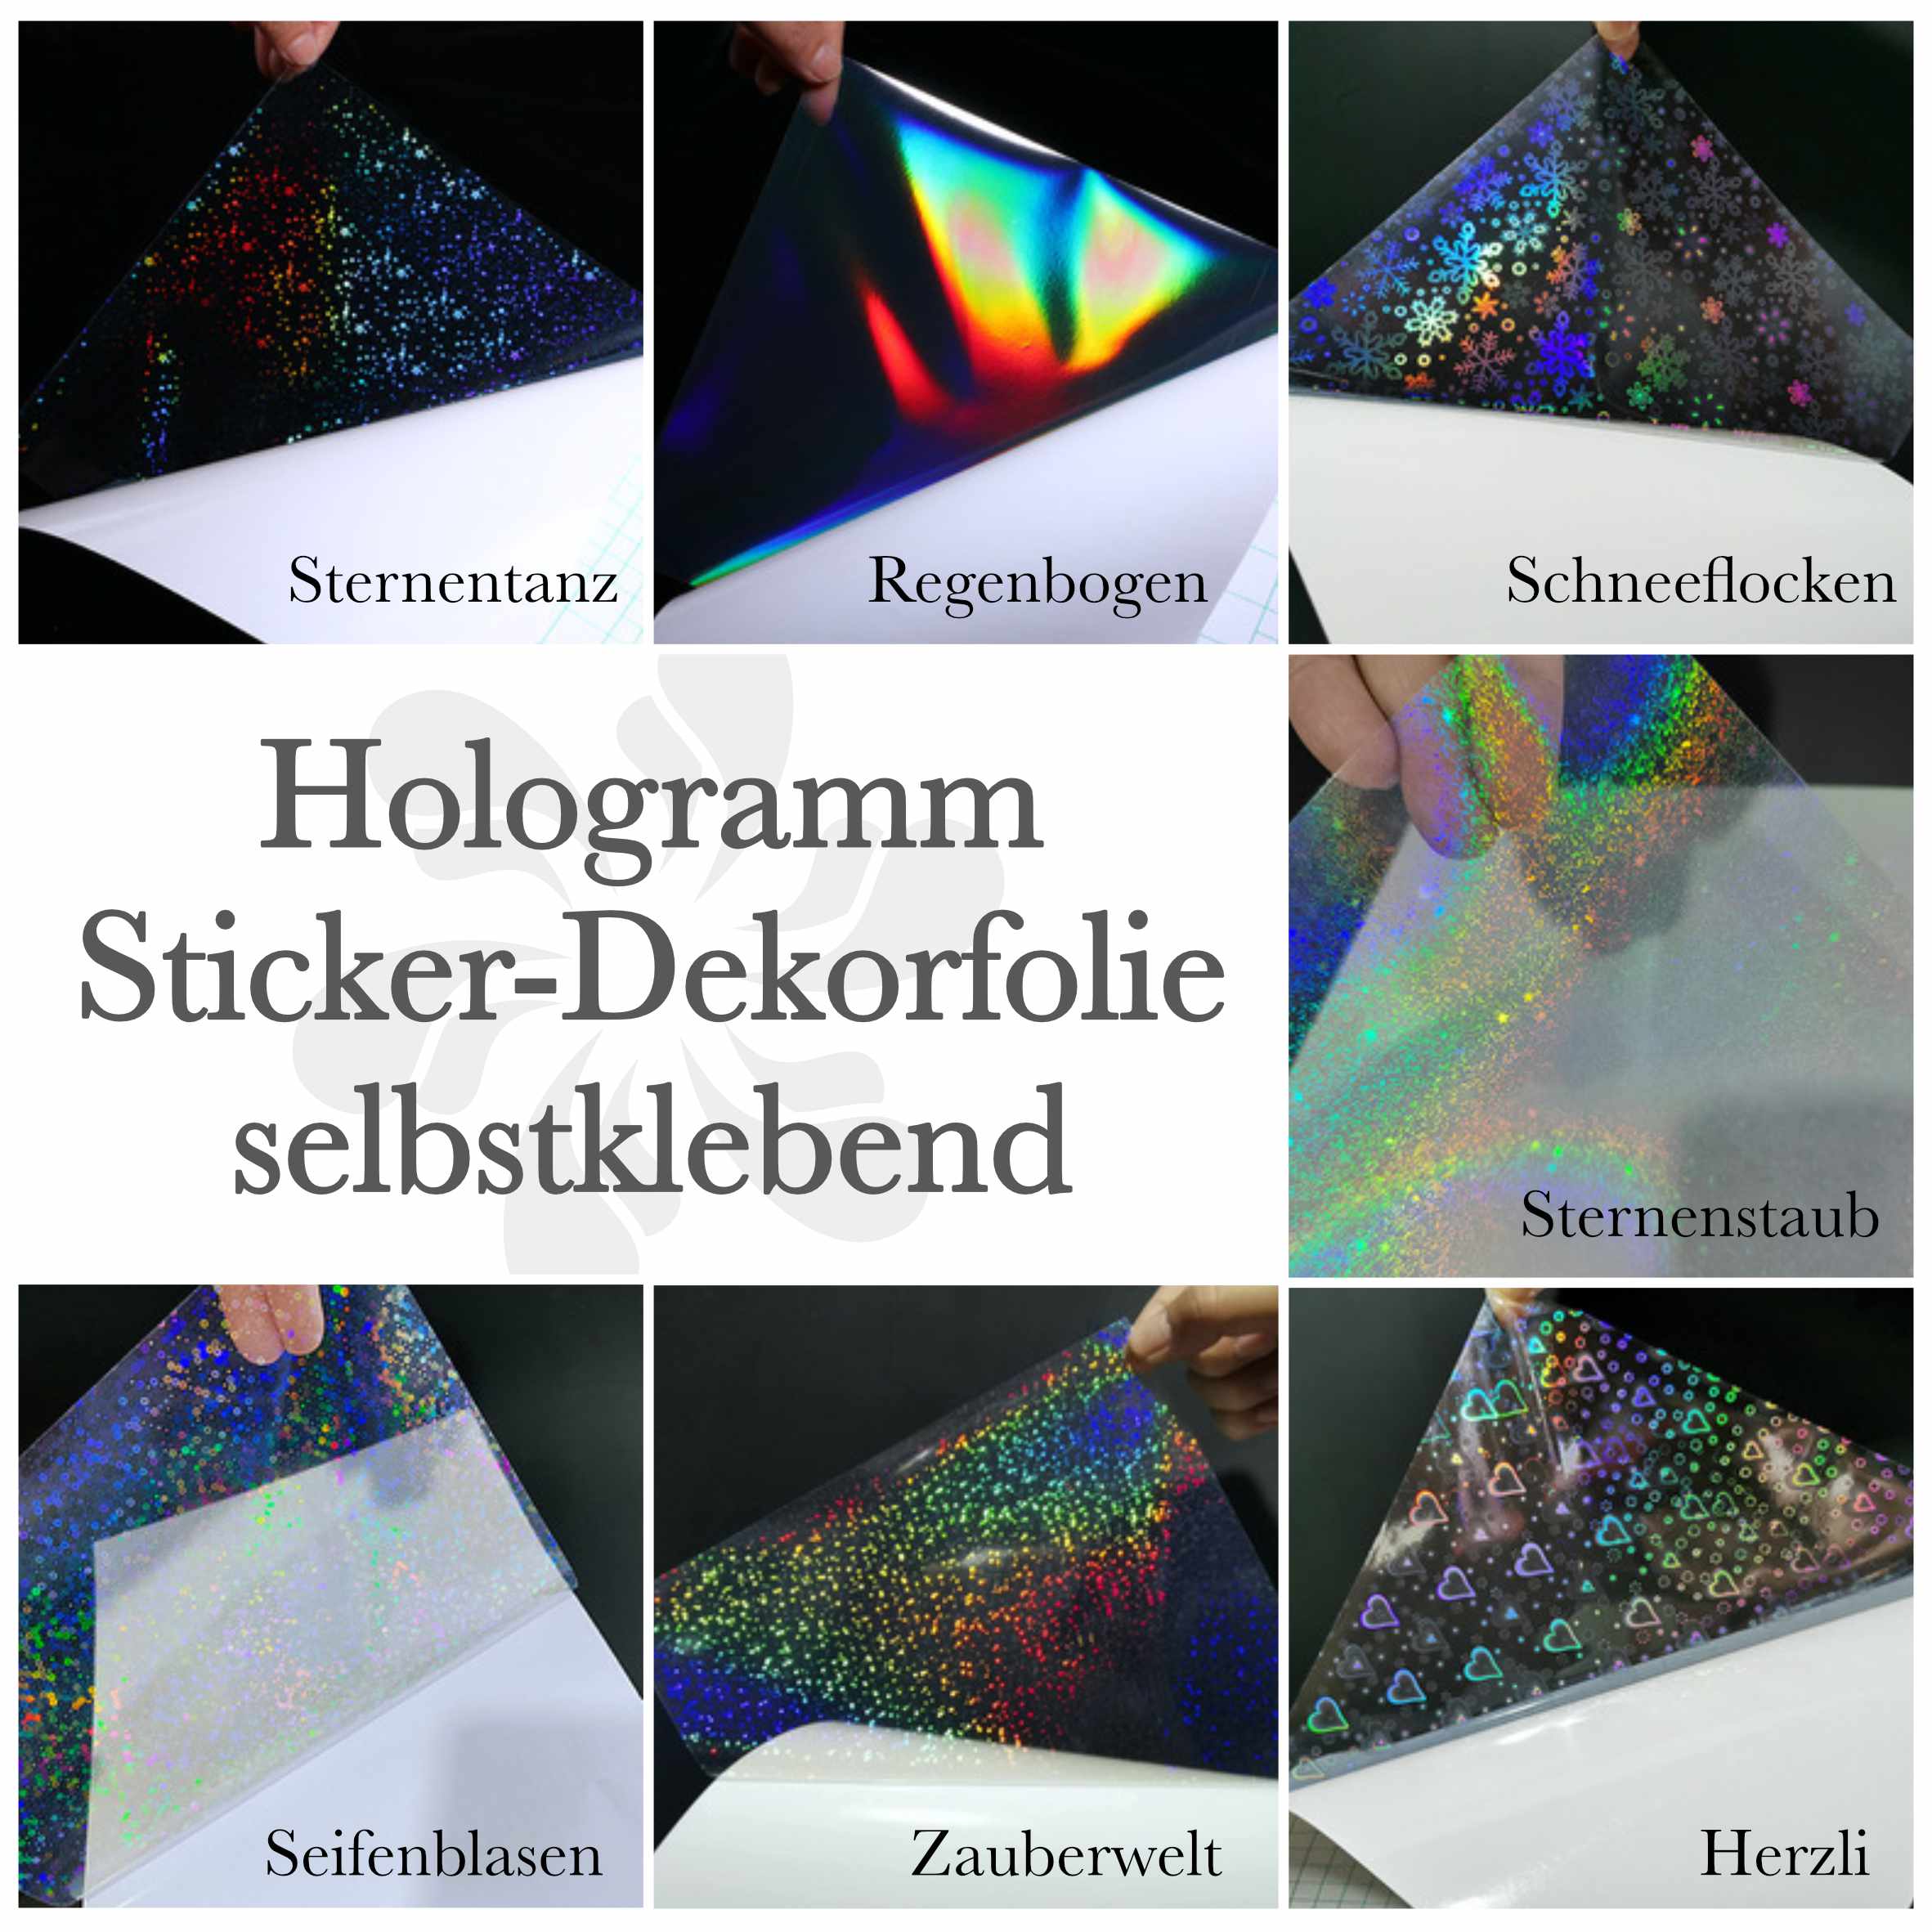 Hologramm Sticker-Dekorfolie - diverse Varianten